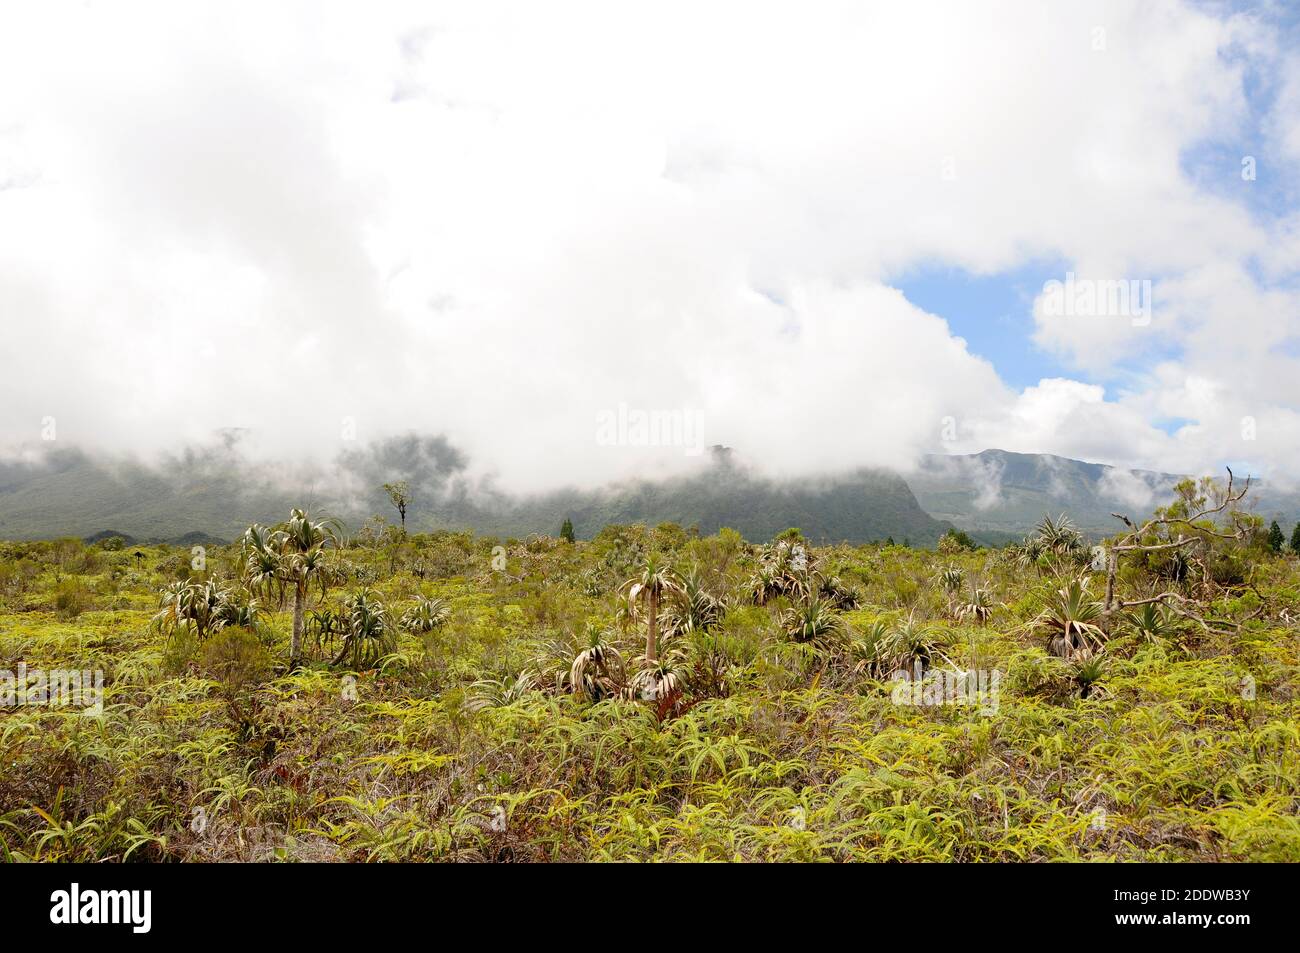 Las nubes se aferran a las montañas más allá del pantano de Plaines des Palmistes en la isla de la Reunión, el screwpine (Pandanus montanus) marcan los arbustos bajos Foto de stock